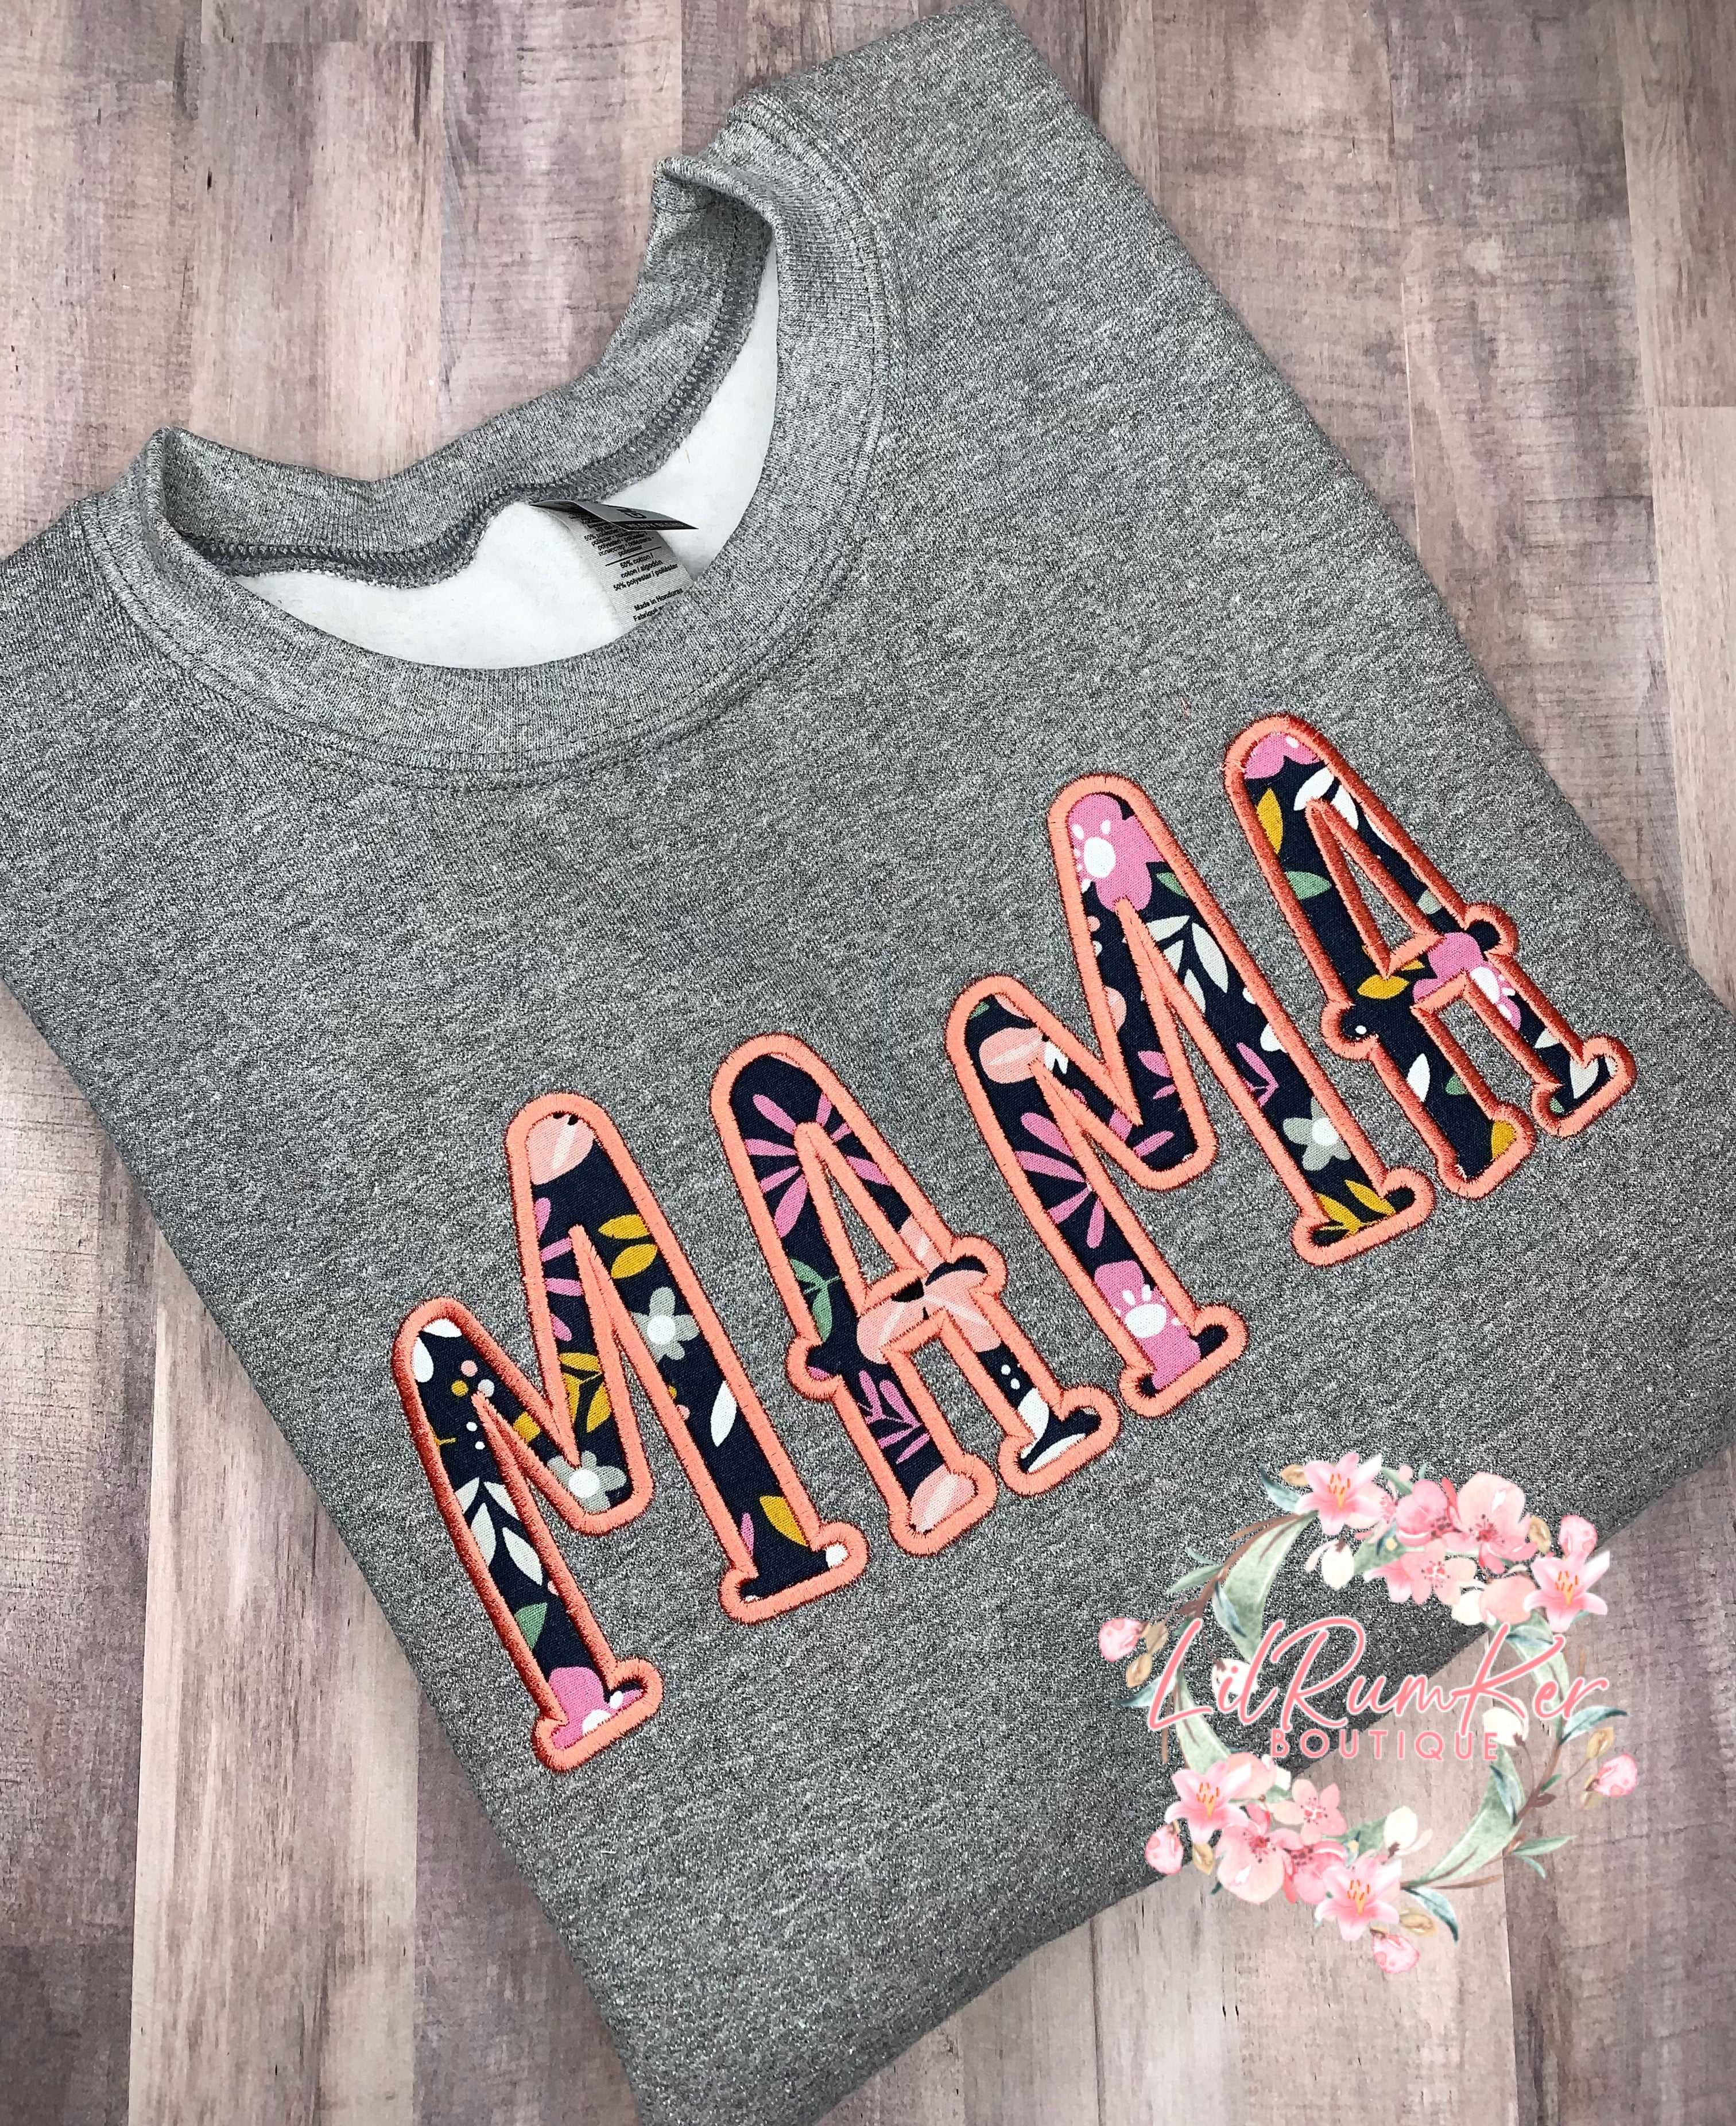 Coral/navy floral mama sweatshirt or shirt